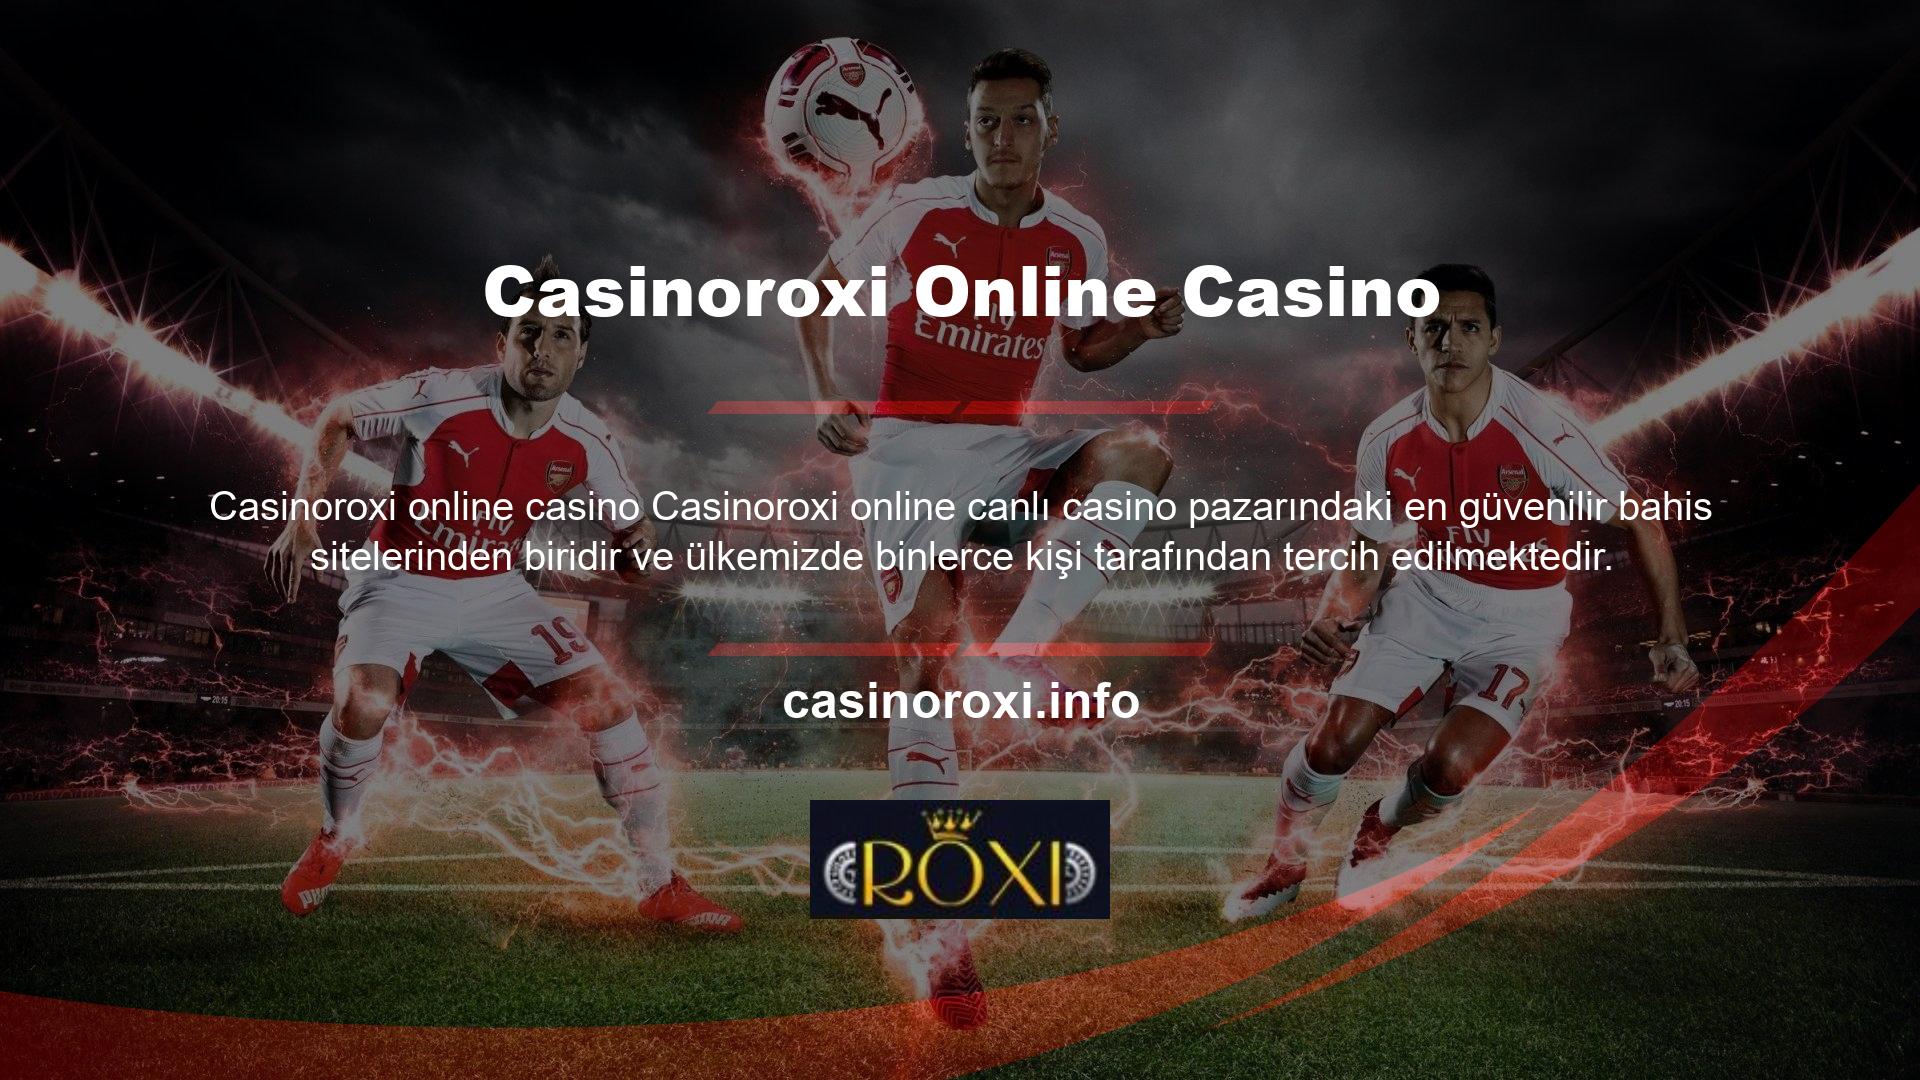 Casinoroxi Casino, Casinoroxi Betting olarak görünebilecek bir web sitesidir